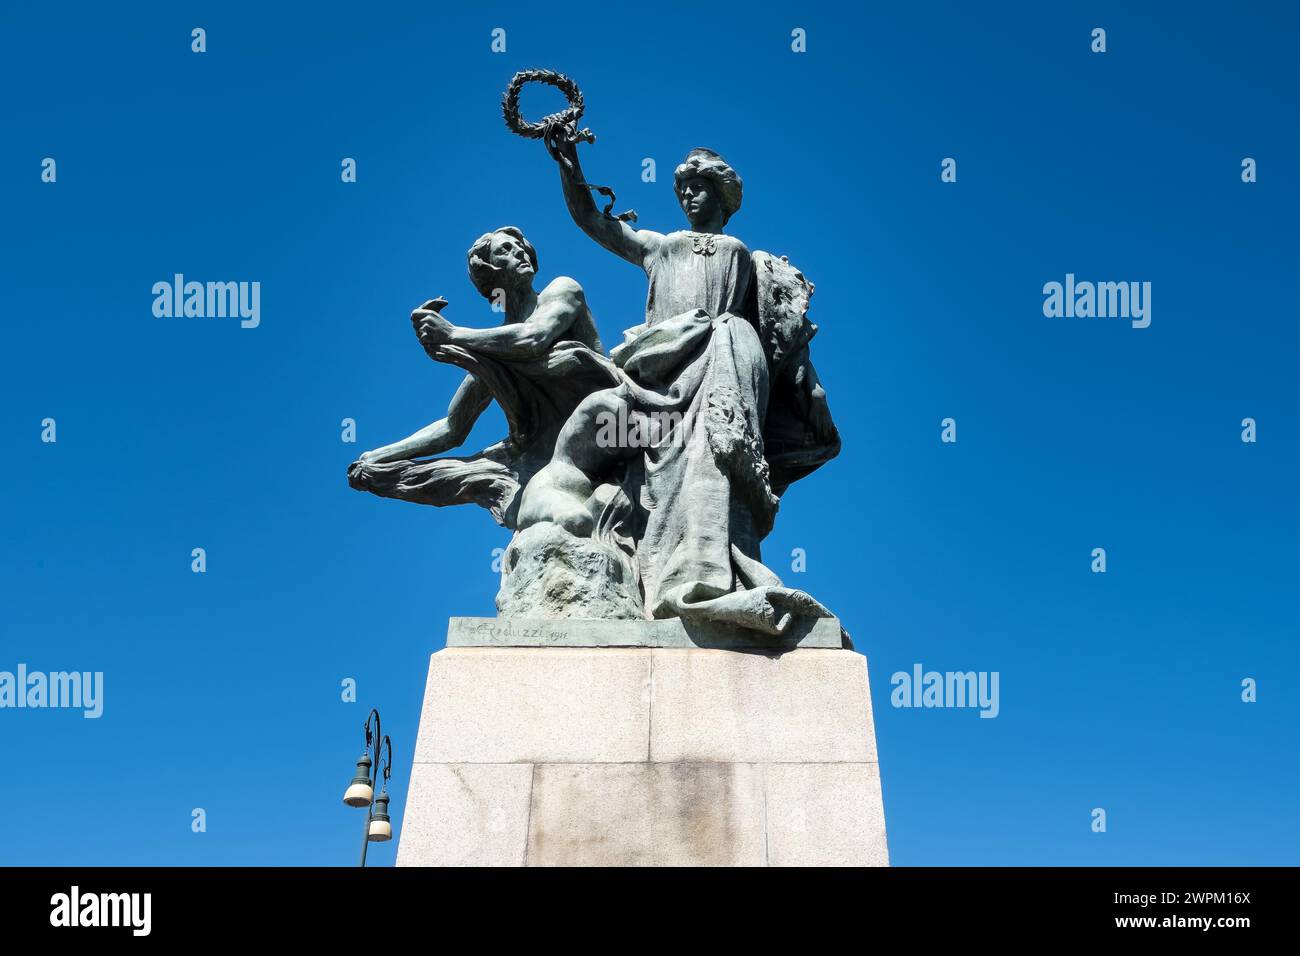 Dettaglio architettonico delle statue che adornano il ponte Umberto i, che si estende lungo il po, Torino, Piemonte, Italia, Europa Foto Stock